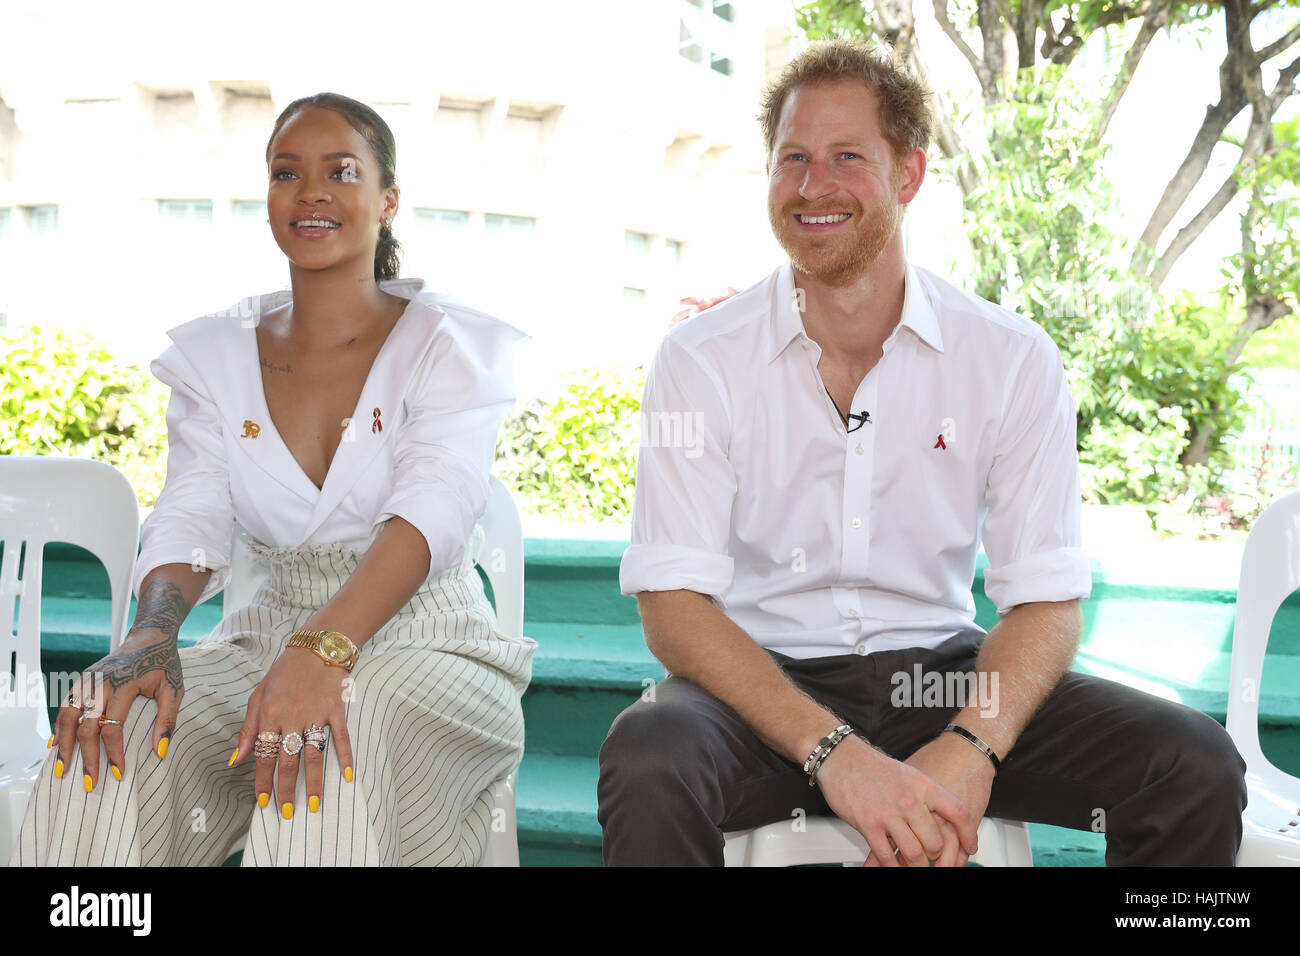 Snger, Rihanna et le prince Harry sur scène, à l'un au courant' événement organisé par la Commission nationale de lutte contre le VIH/SIDA dans la région de Bridgetown, Barbade, au cours de sa tournée de la région des Caraïbes. Banque D'Images